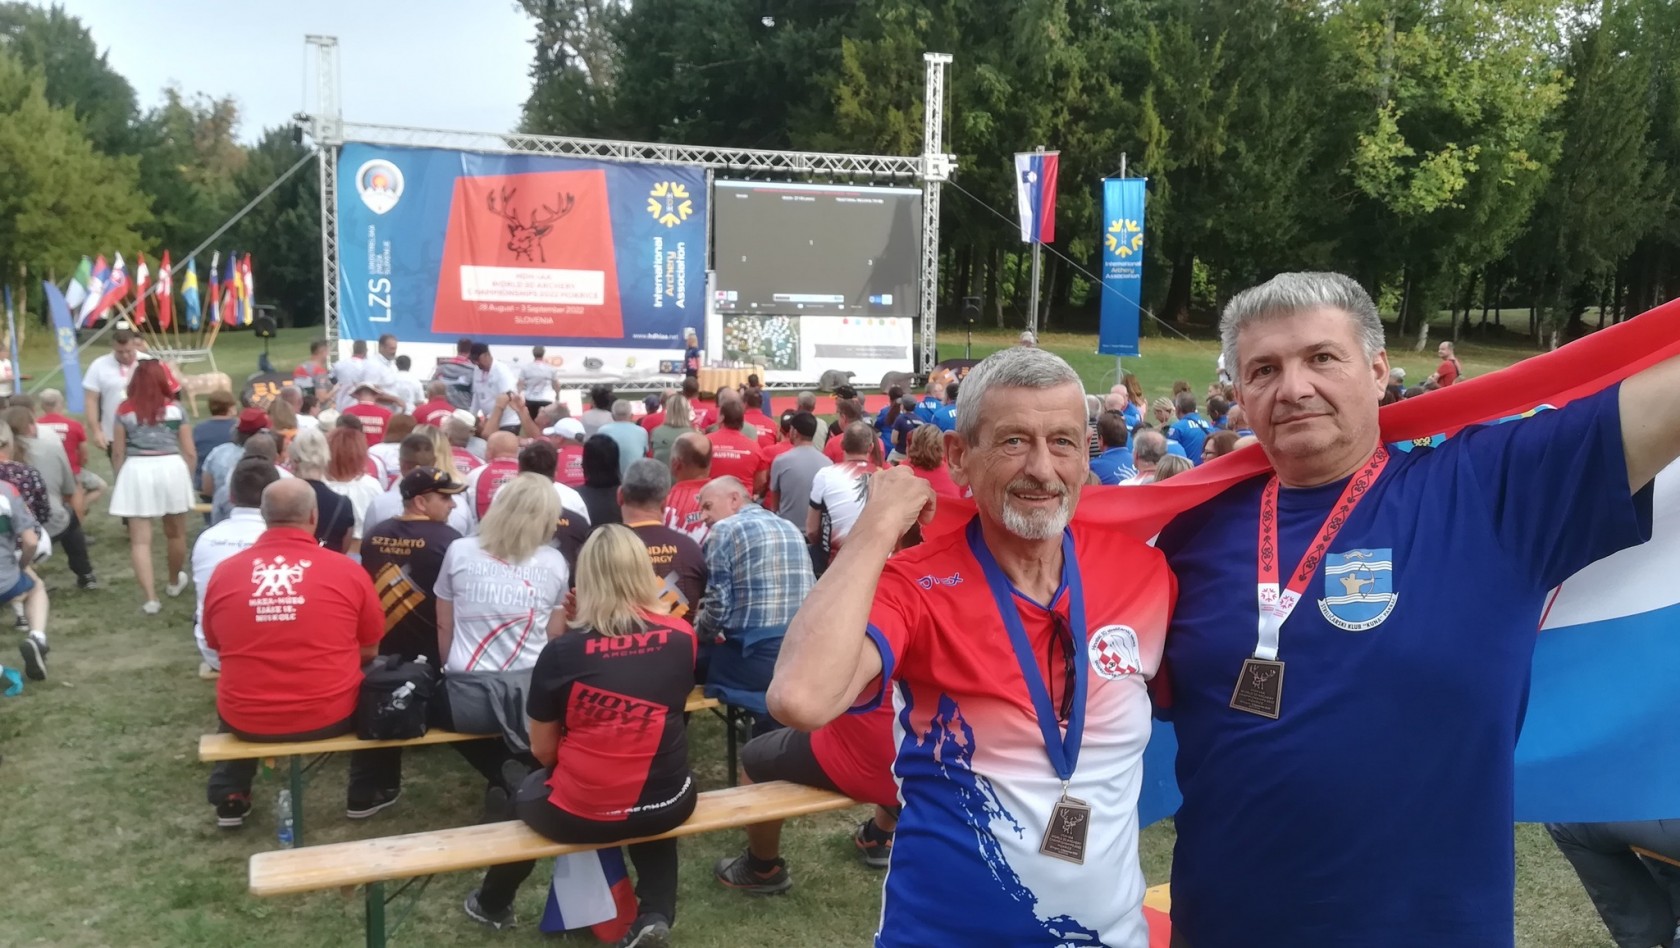 STRELIČARSTVO: Marošević brončani na svjetskom 3D prvenstvu u Sloveniji